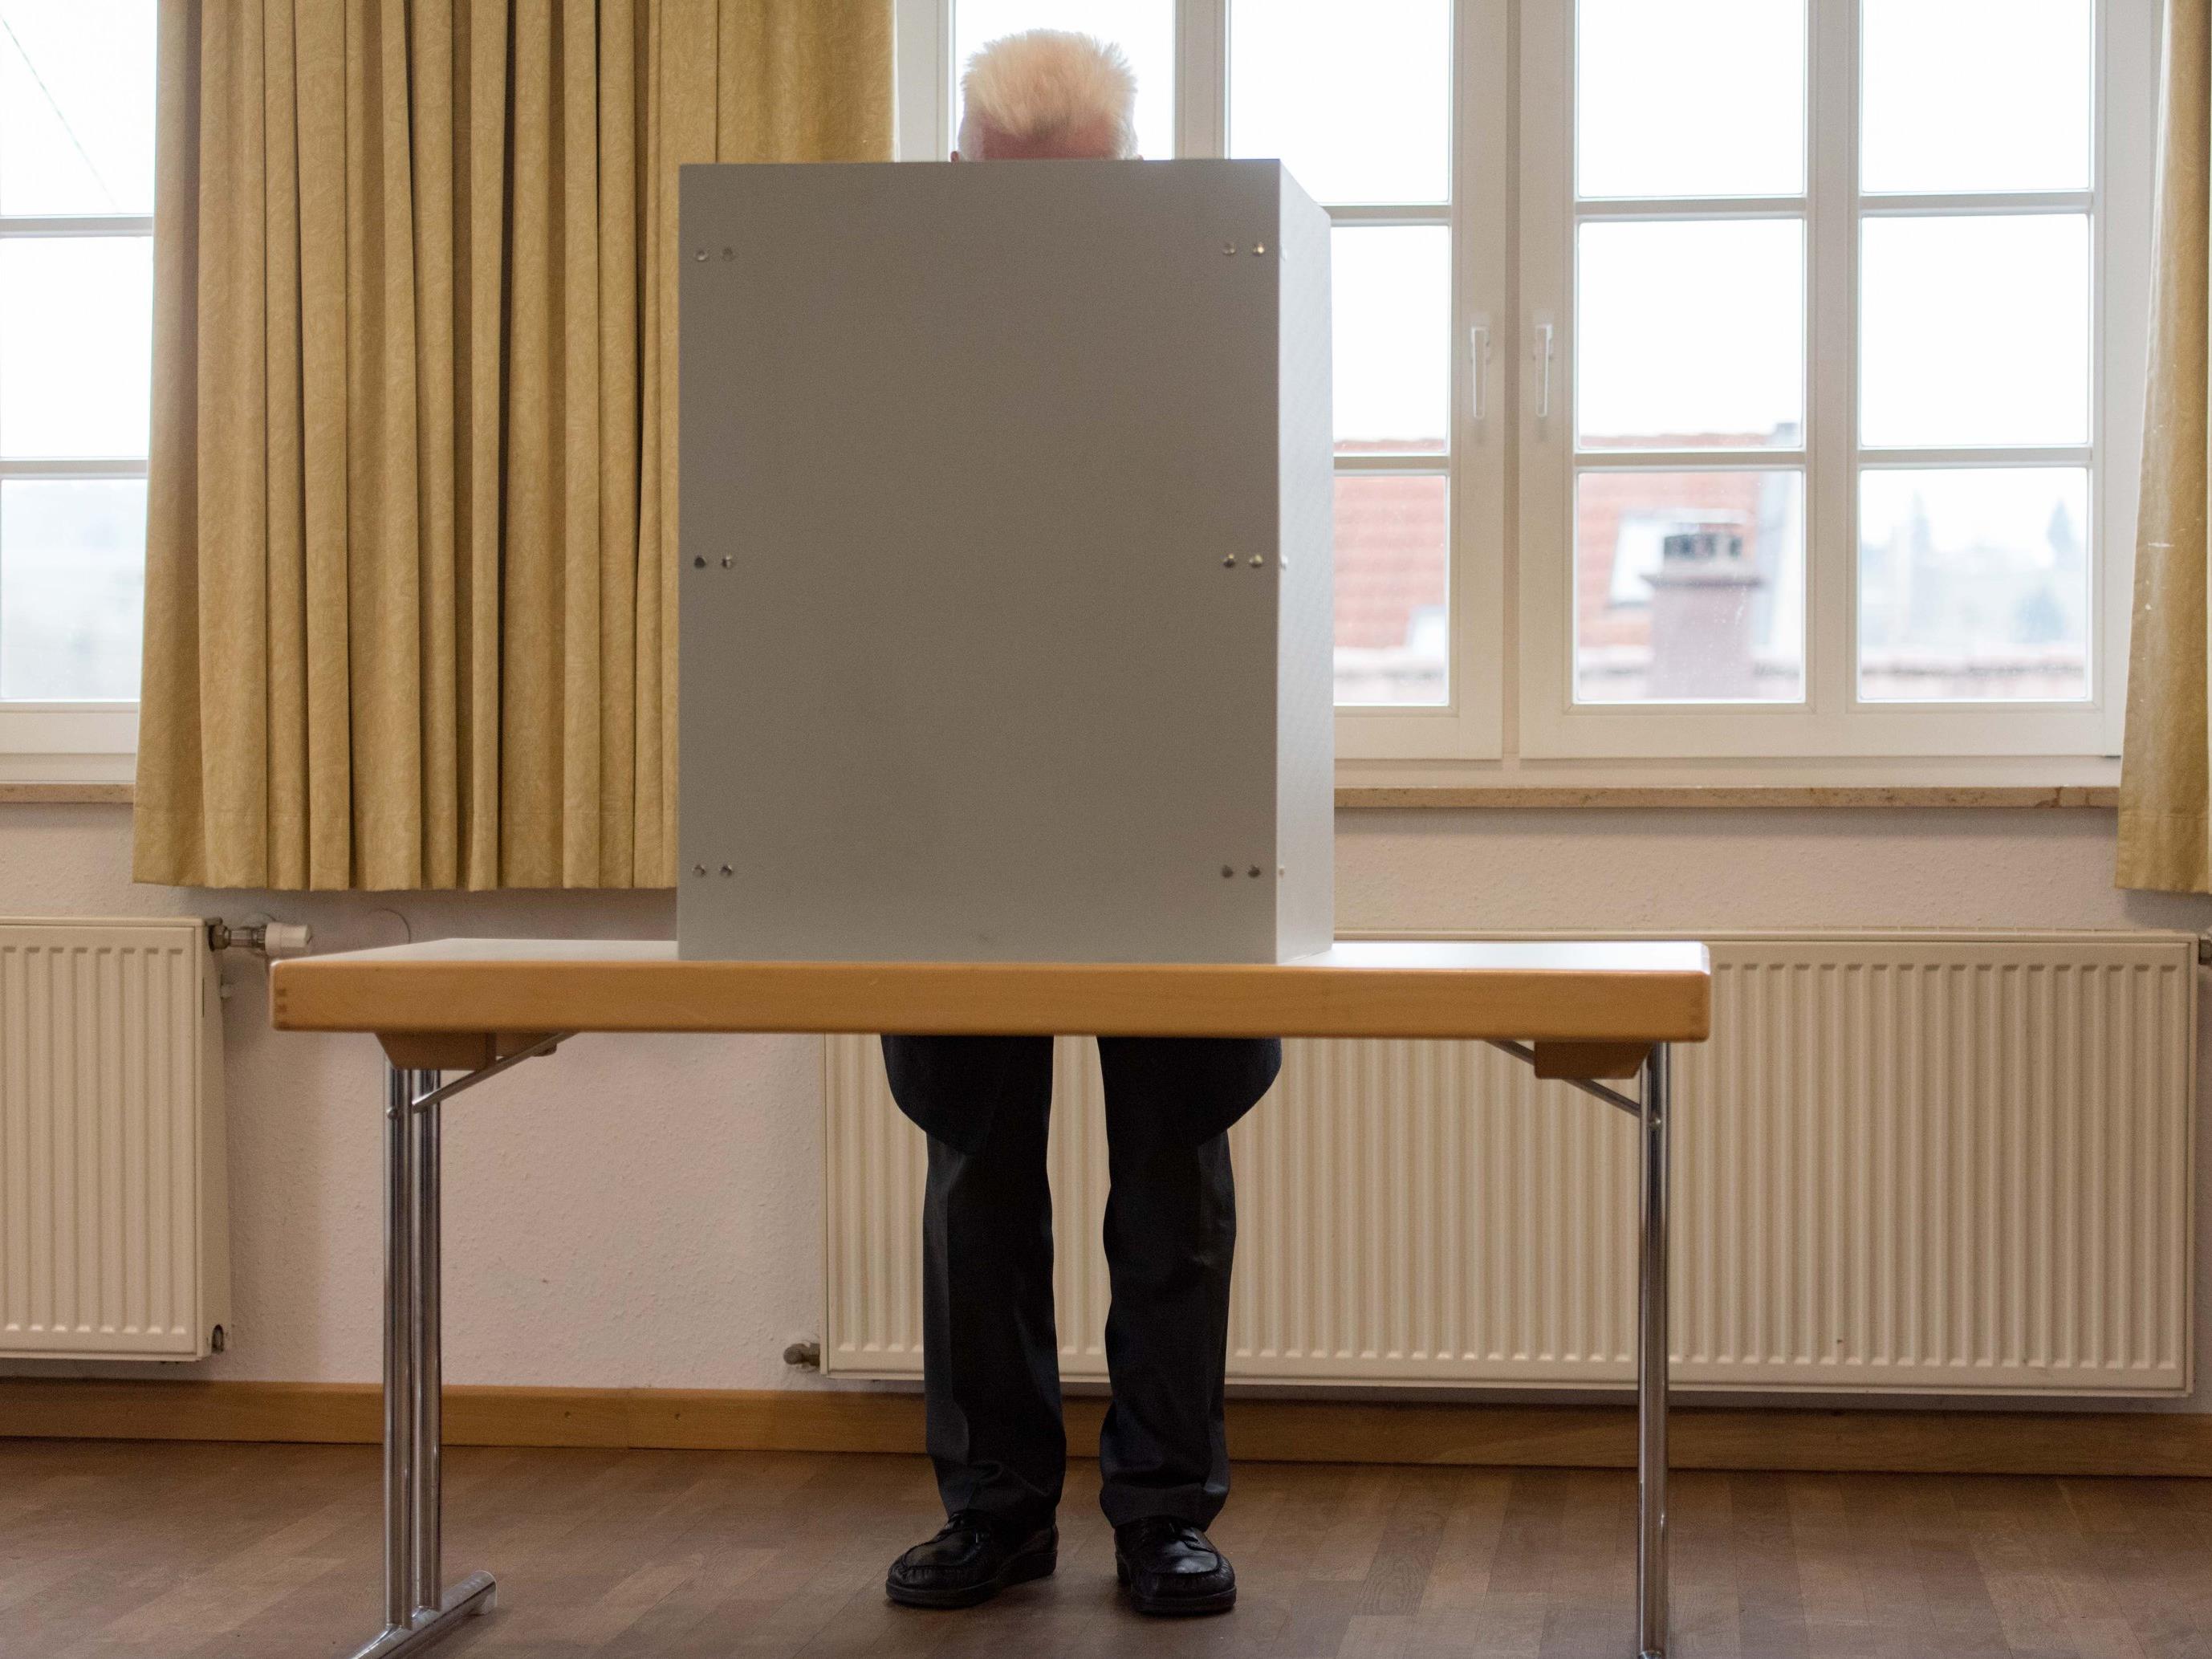 Die FPÖ prangert eine mögliche Boppelwahl bei der Bundespräsidentenwahl an.